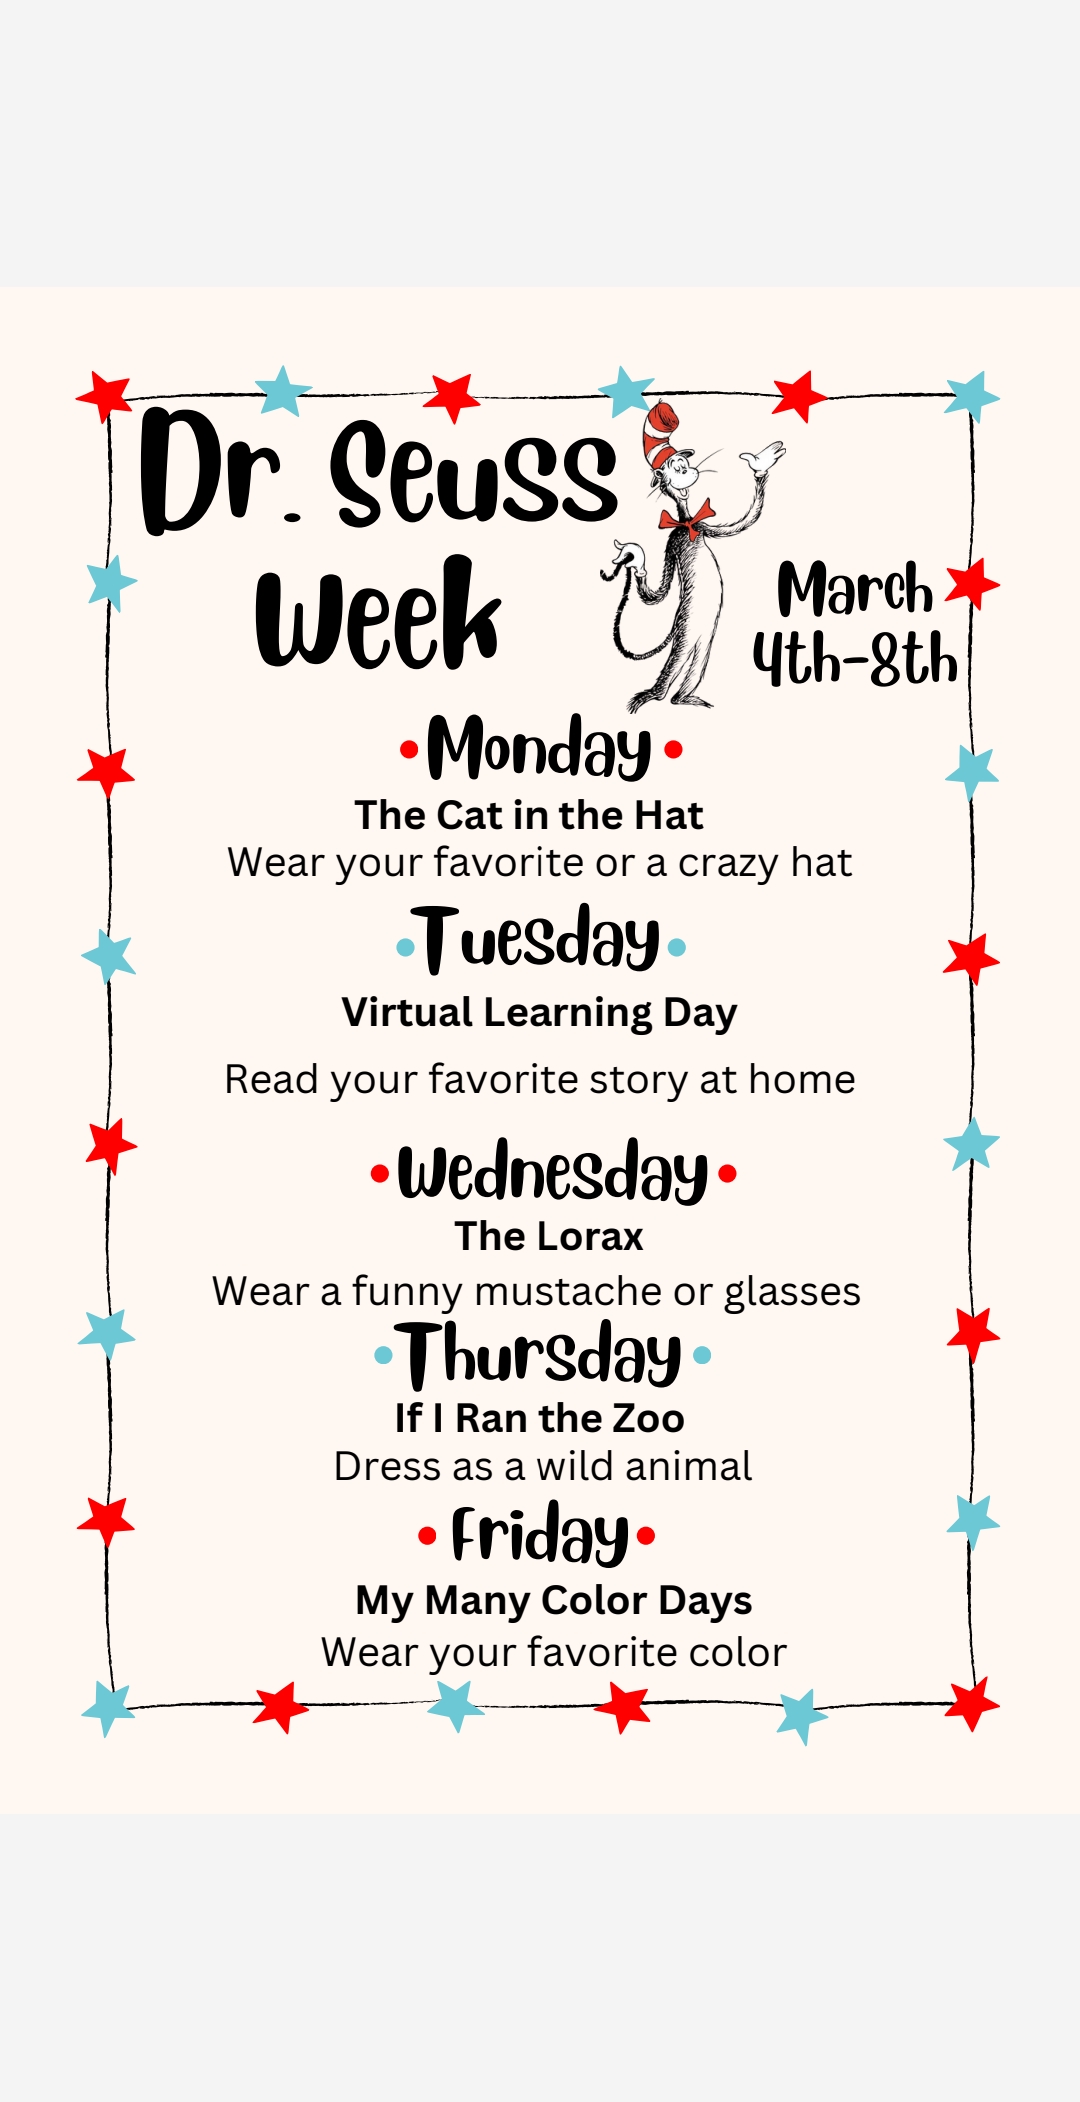 Dr. Seuss Week Activities